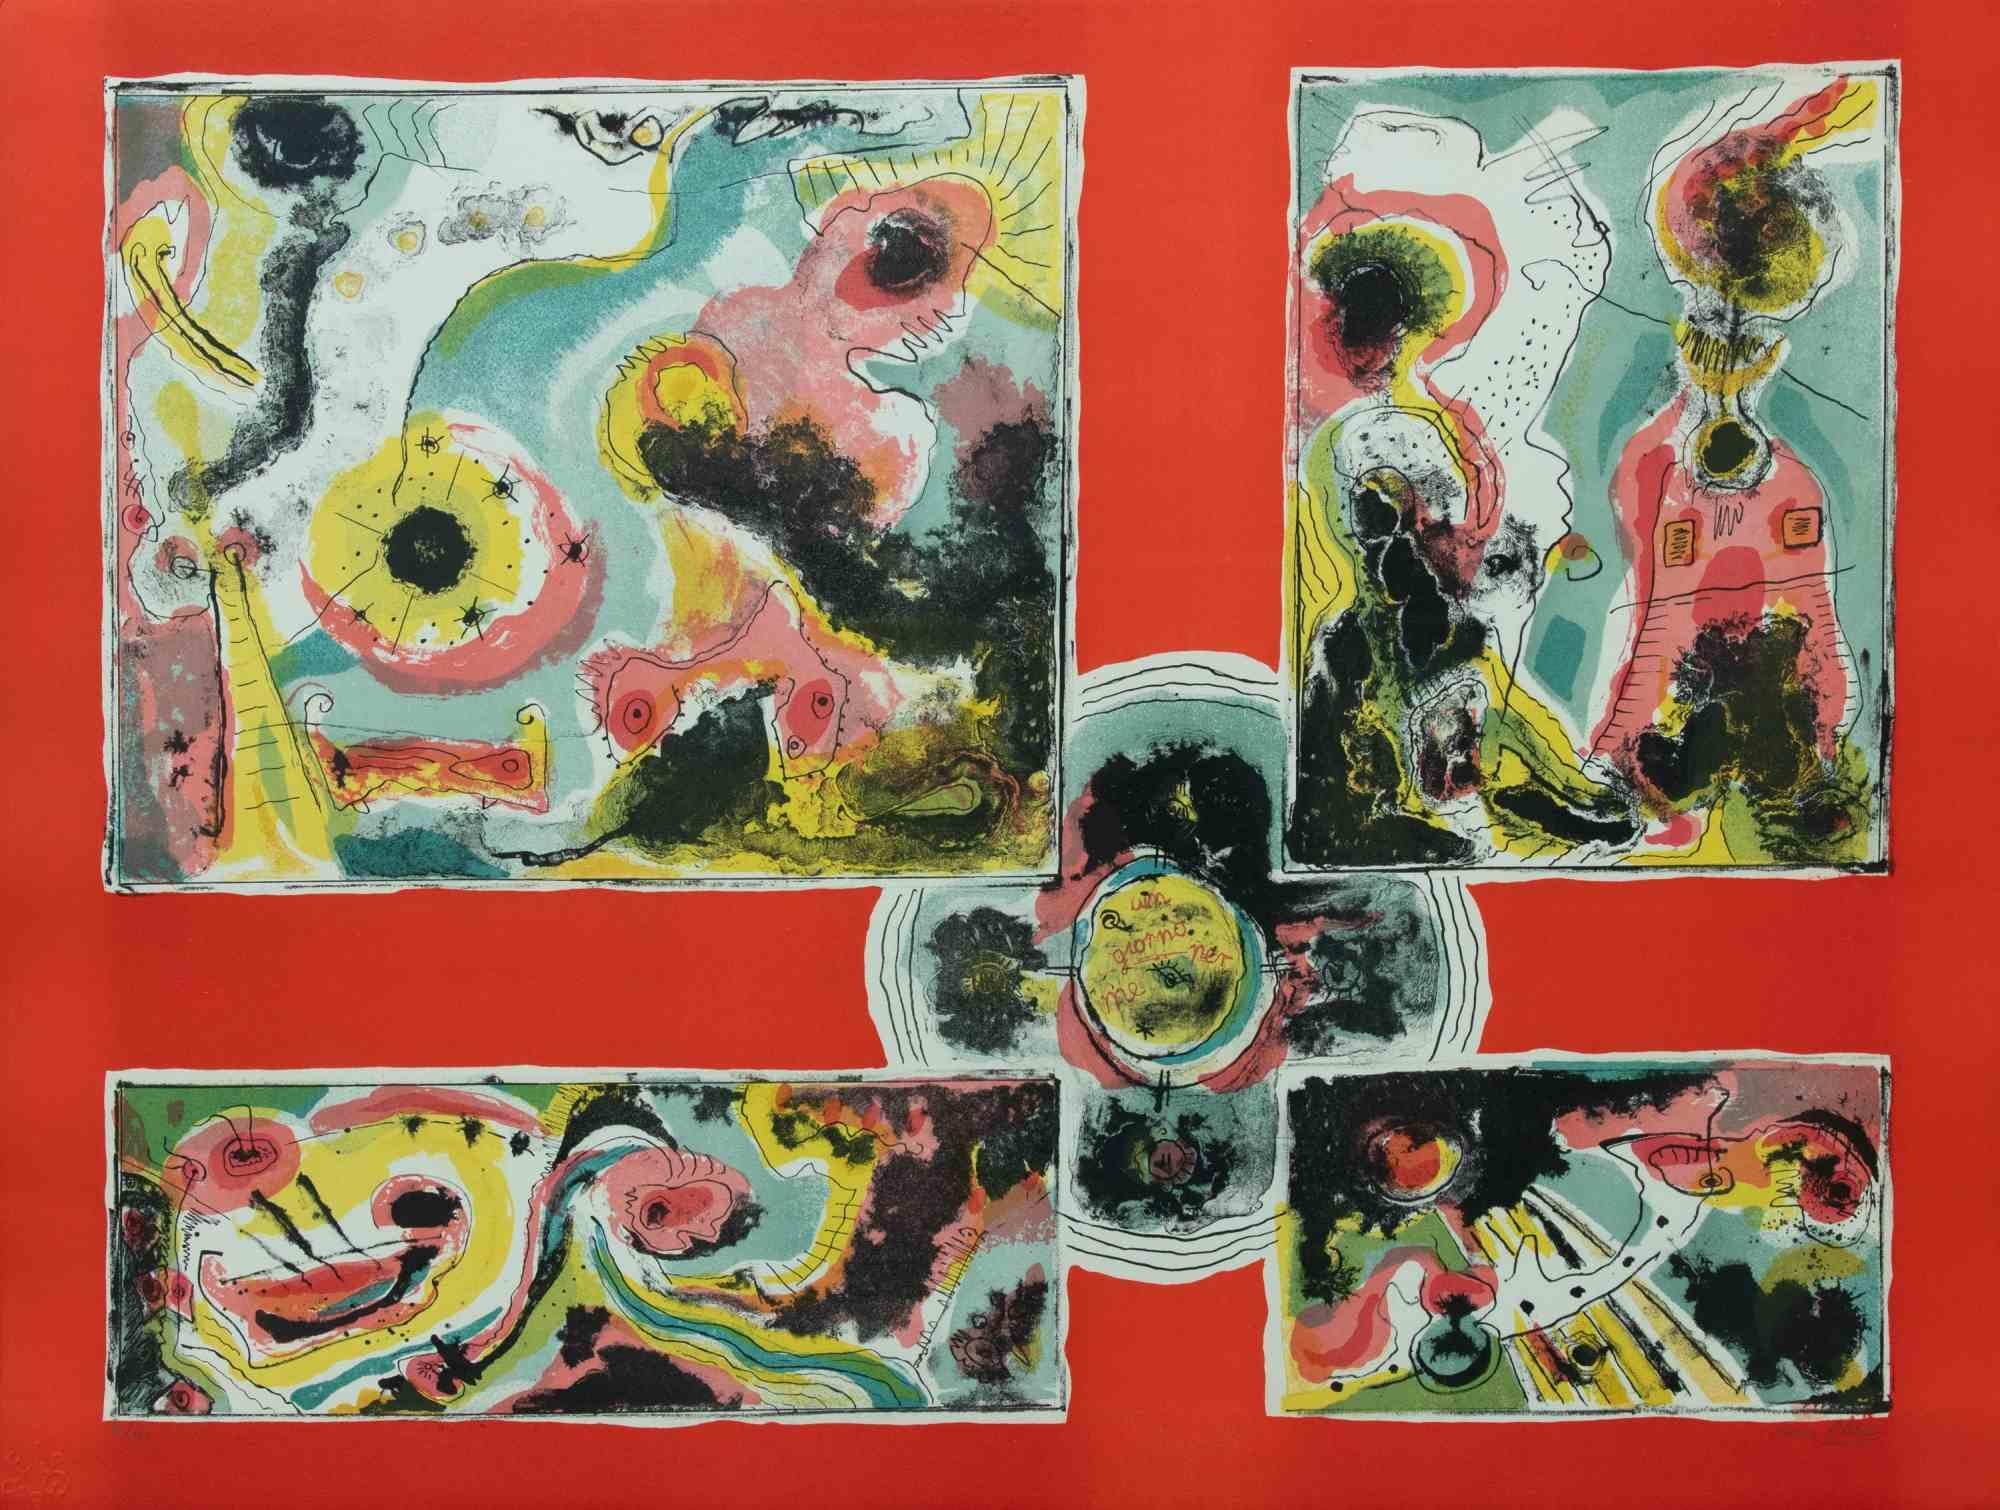 Red Abstract est une œuvre d'art contemporain réalisée par Le Pond dans les années 1970.

Lithographie en couleurs mélangées.

Signé à la main dans la marge inférieure.

Numéroté dans la marge inférieure.

Edition de 100 exemplaires. 

